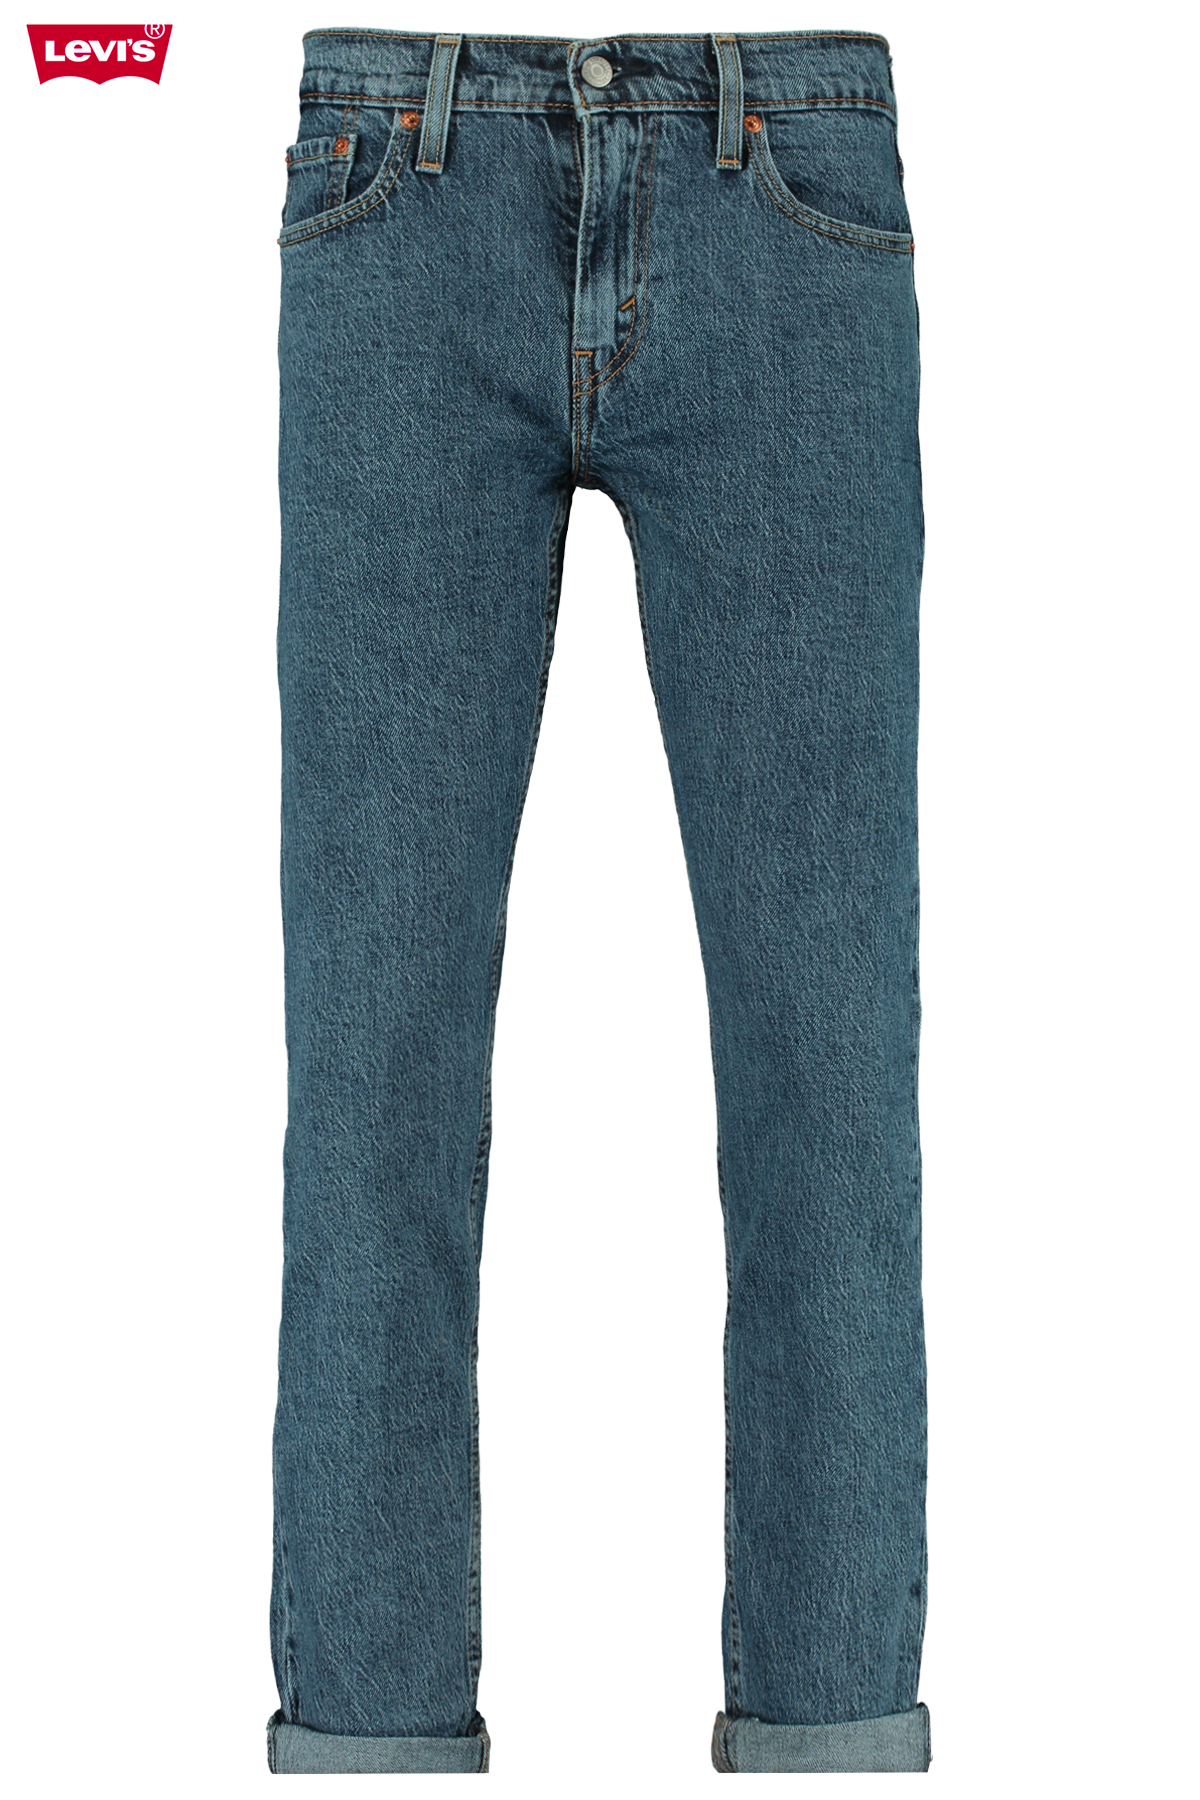 levis 502 jeans women's